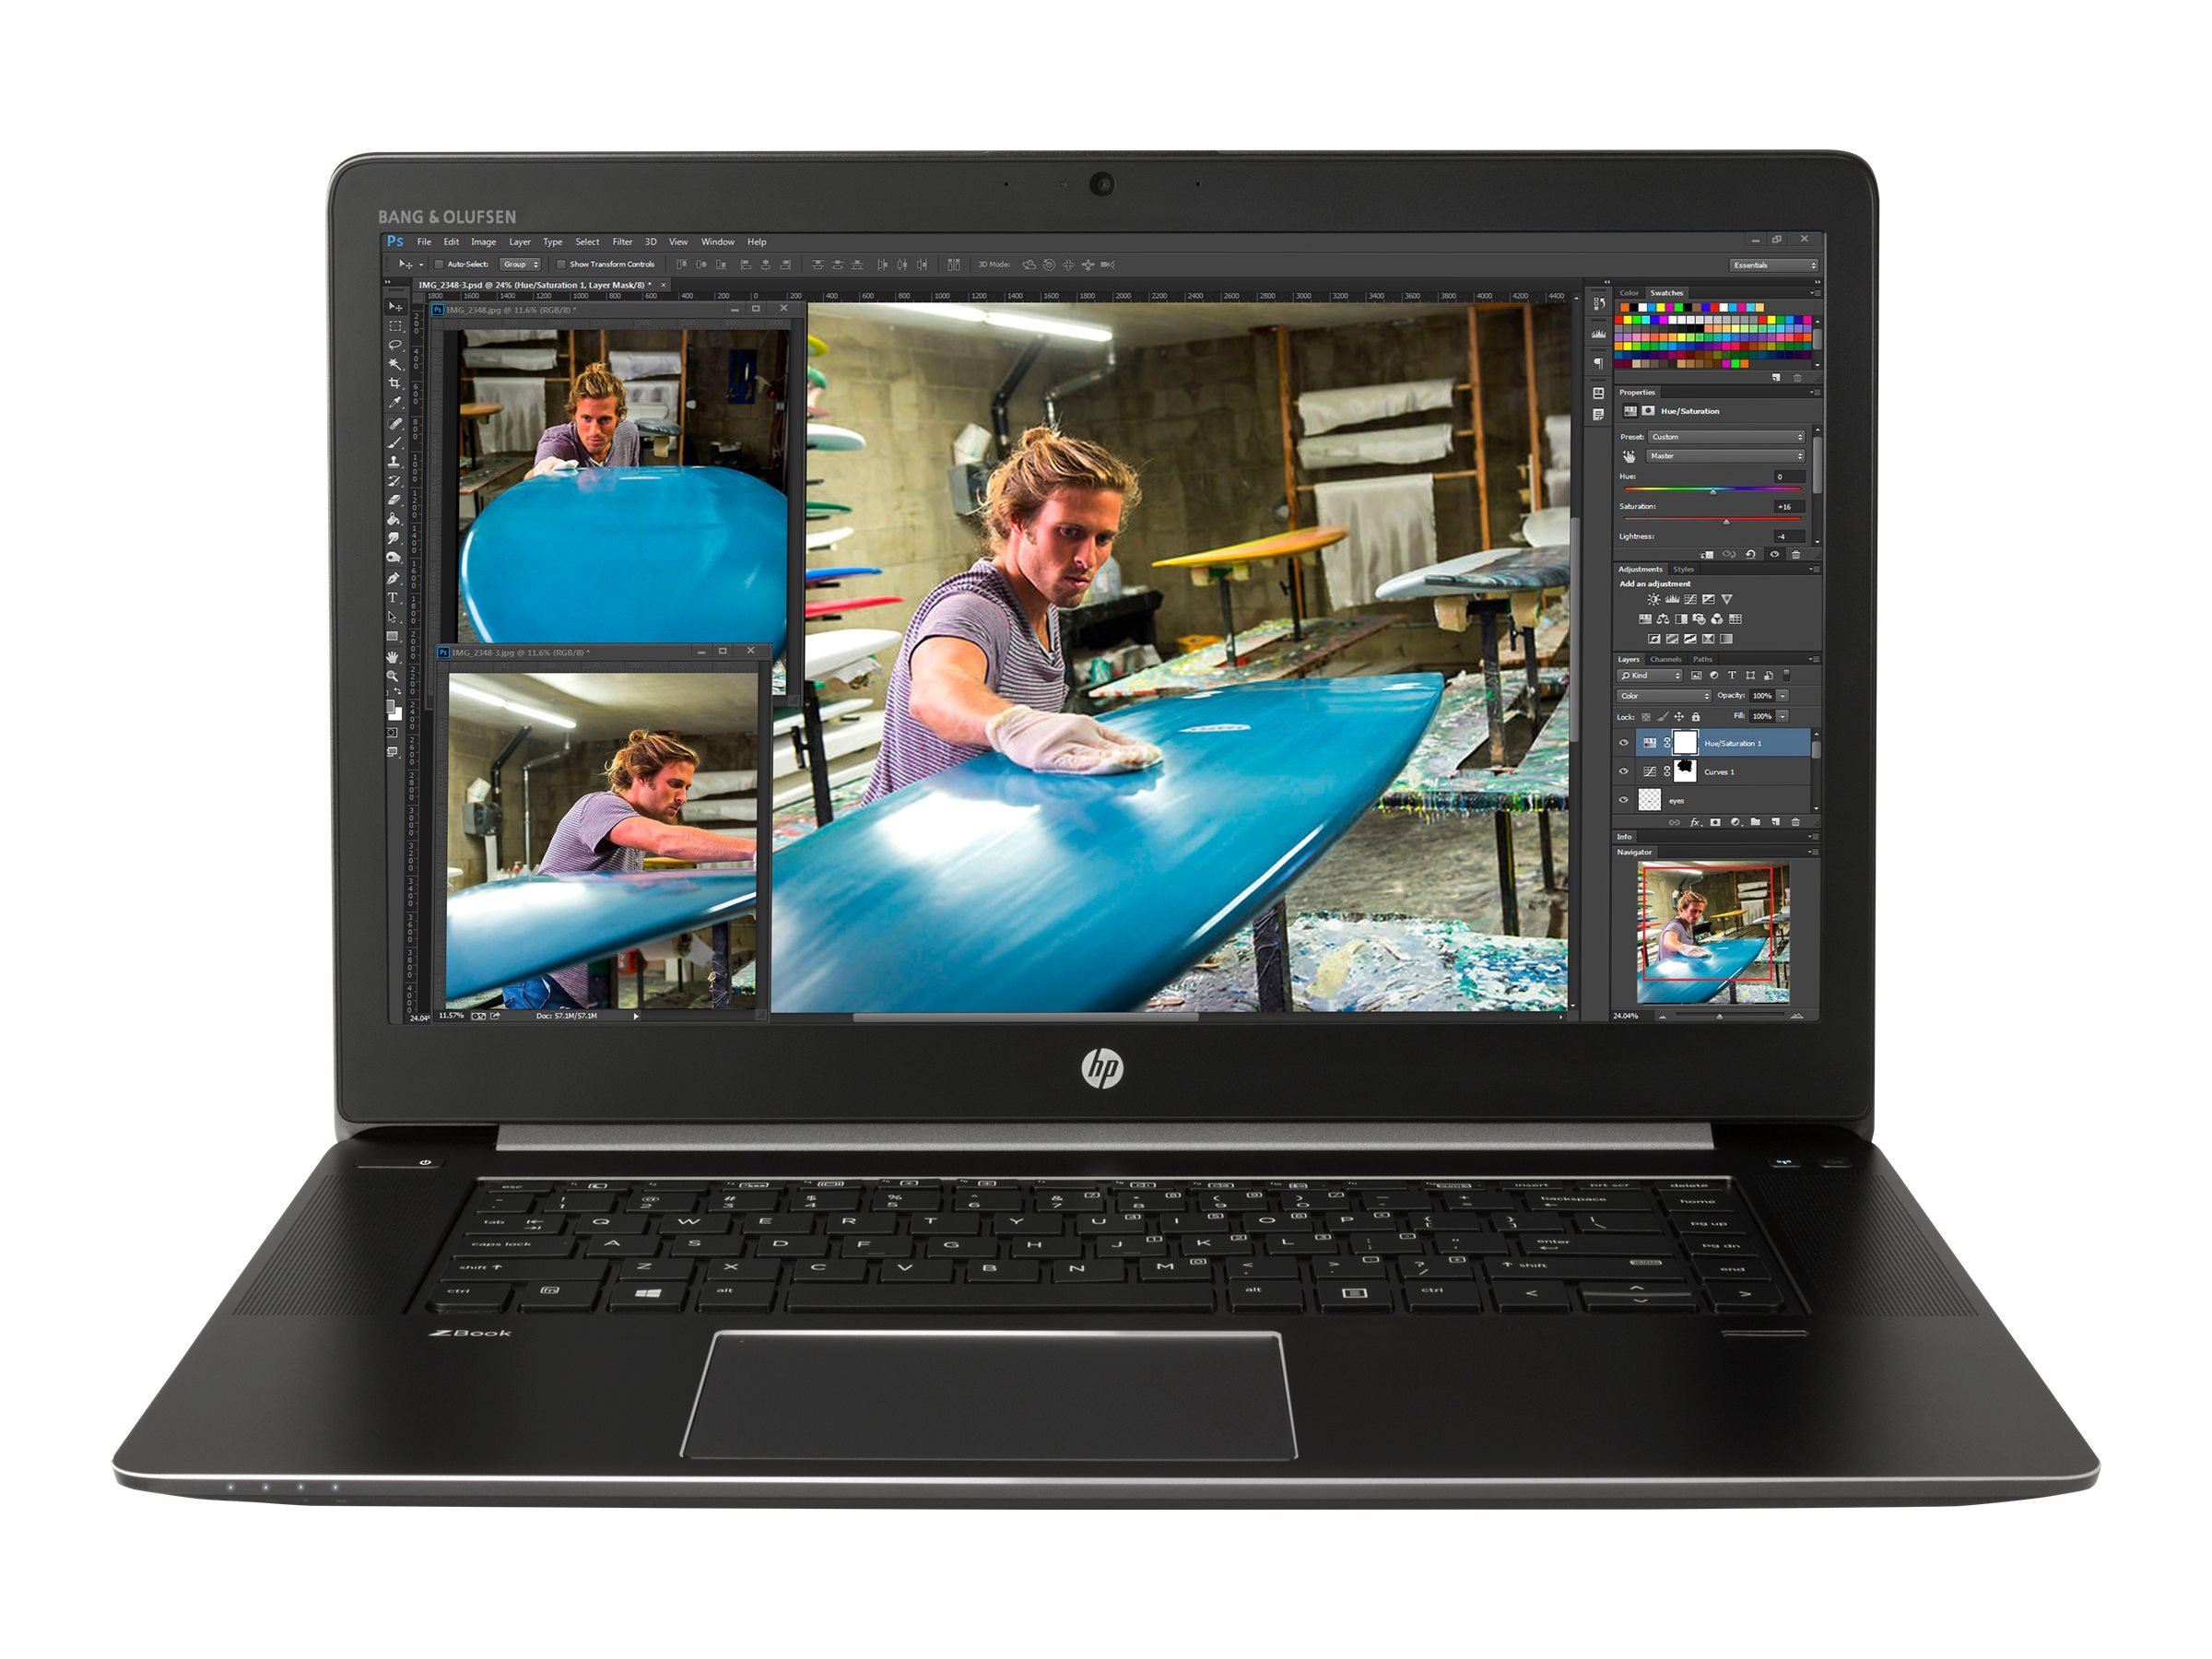 مشخصات و خرید اینترنتی لپ تاپ اچ پی زدبوک HP Zbook 15 G3 Studio پردازنده Core i7 نسل ششم گرافیک کوادرو با بهترین قیمت از فروشگاه BestLaptop4U